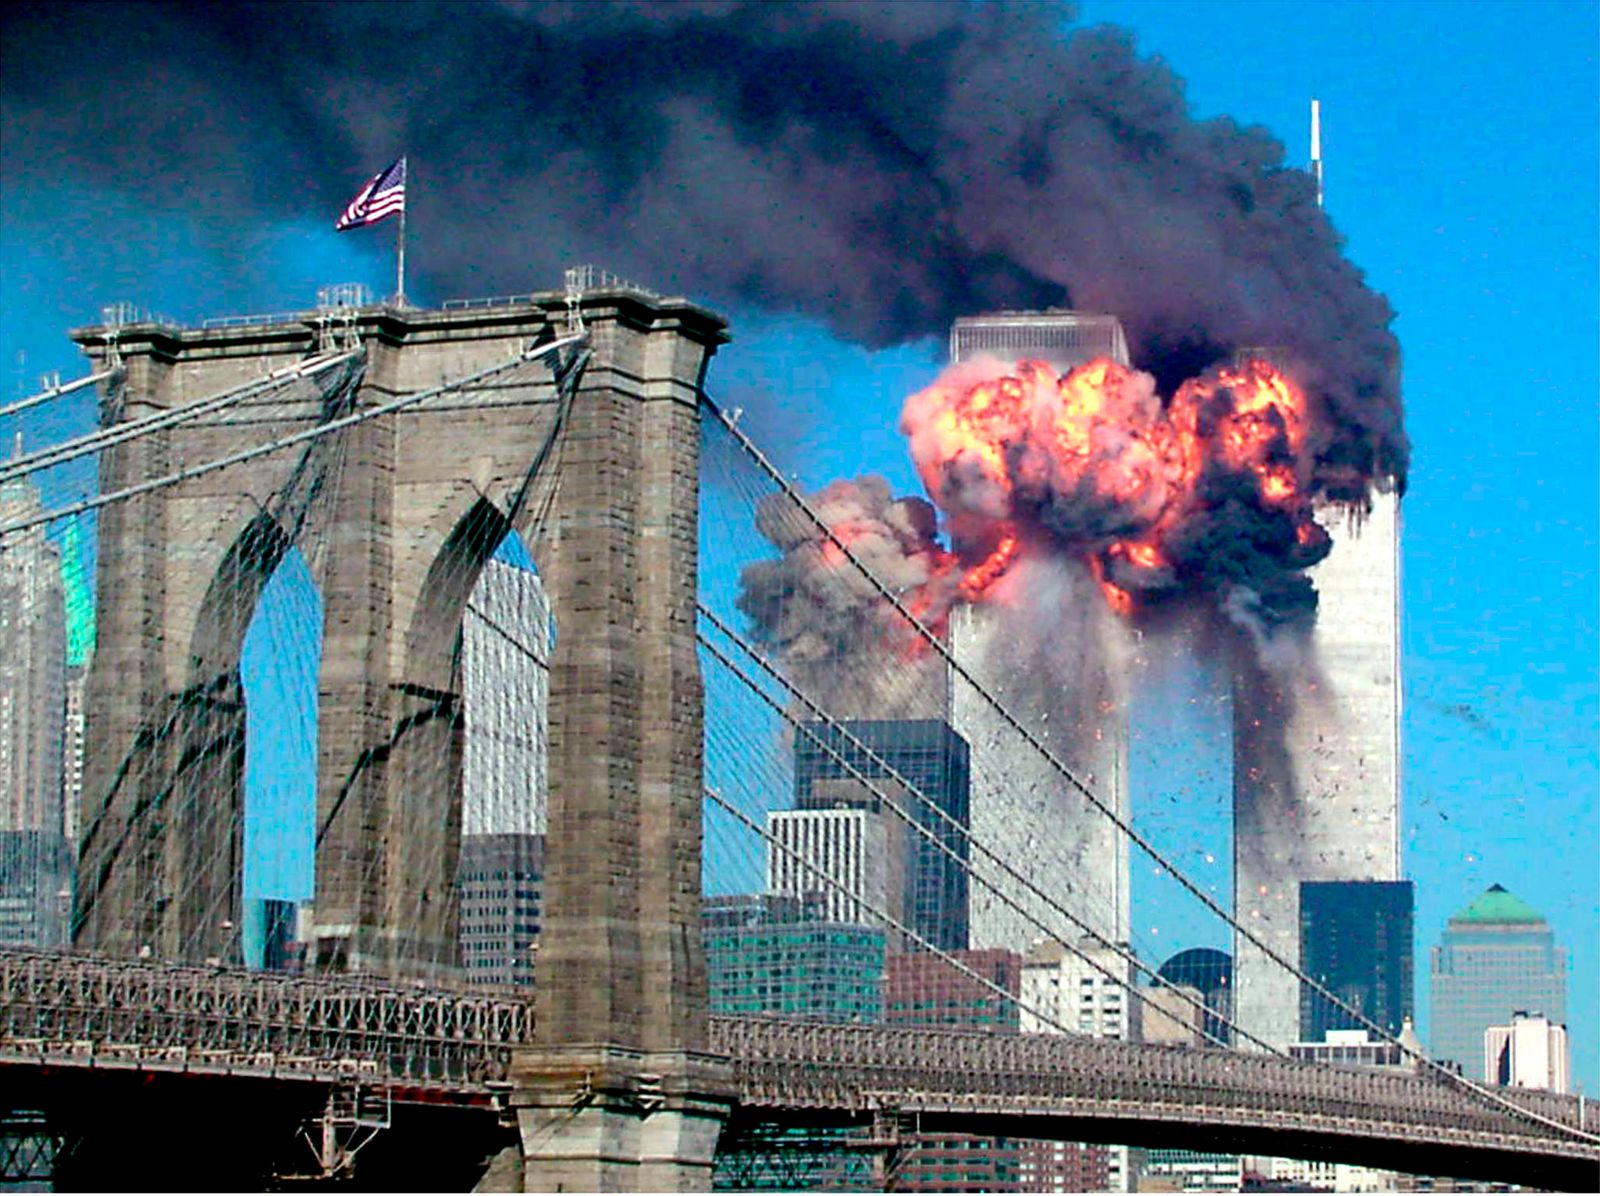 البرج الثاني لمركز التجارة العالمي الذي اشتعلت فيه النيران بعد اصطدامه بطائرة في نيويورك - REUTERS